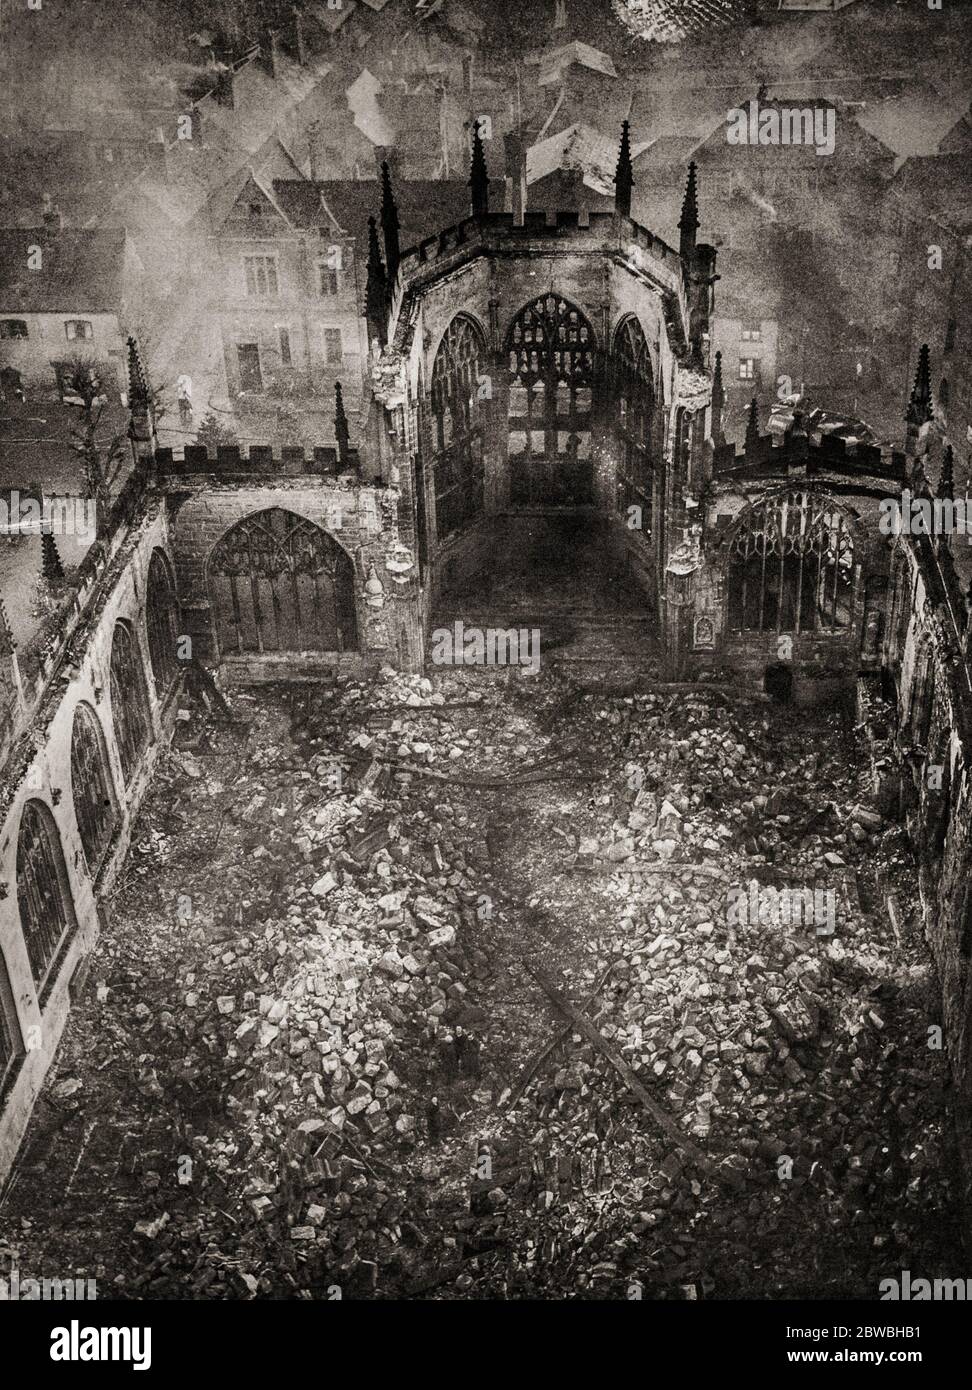 Le rovine della Cattedrale di Coventry (dedicata a San Michele), seguendo il Coventry Blitz, una serie di bombardamenti che si sono avuti nella città inglese di Coventry. La città fu bombardata molte volte durante la seconda guerra mondiale dall'aviazione tedesca (Luftwaffe). Il più devastante di questi attacchi avvenne la sera del 14 novembre 1940, quando fu colpita la Cattedrale. Foto Stock